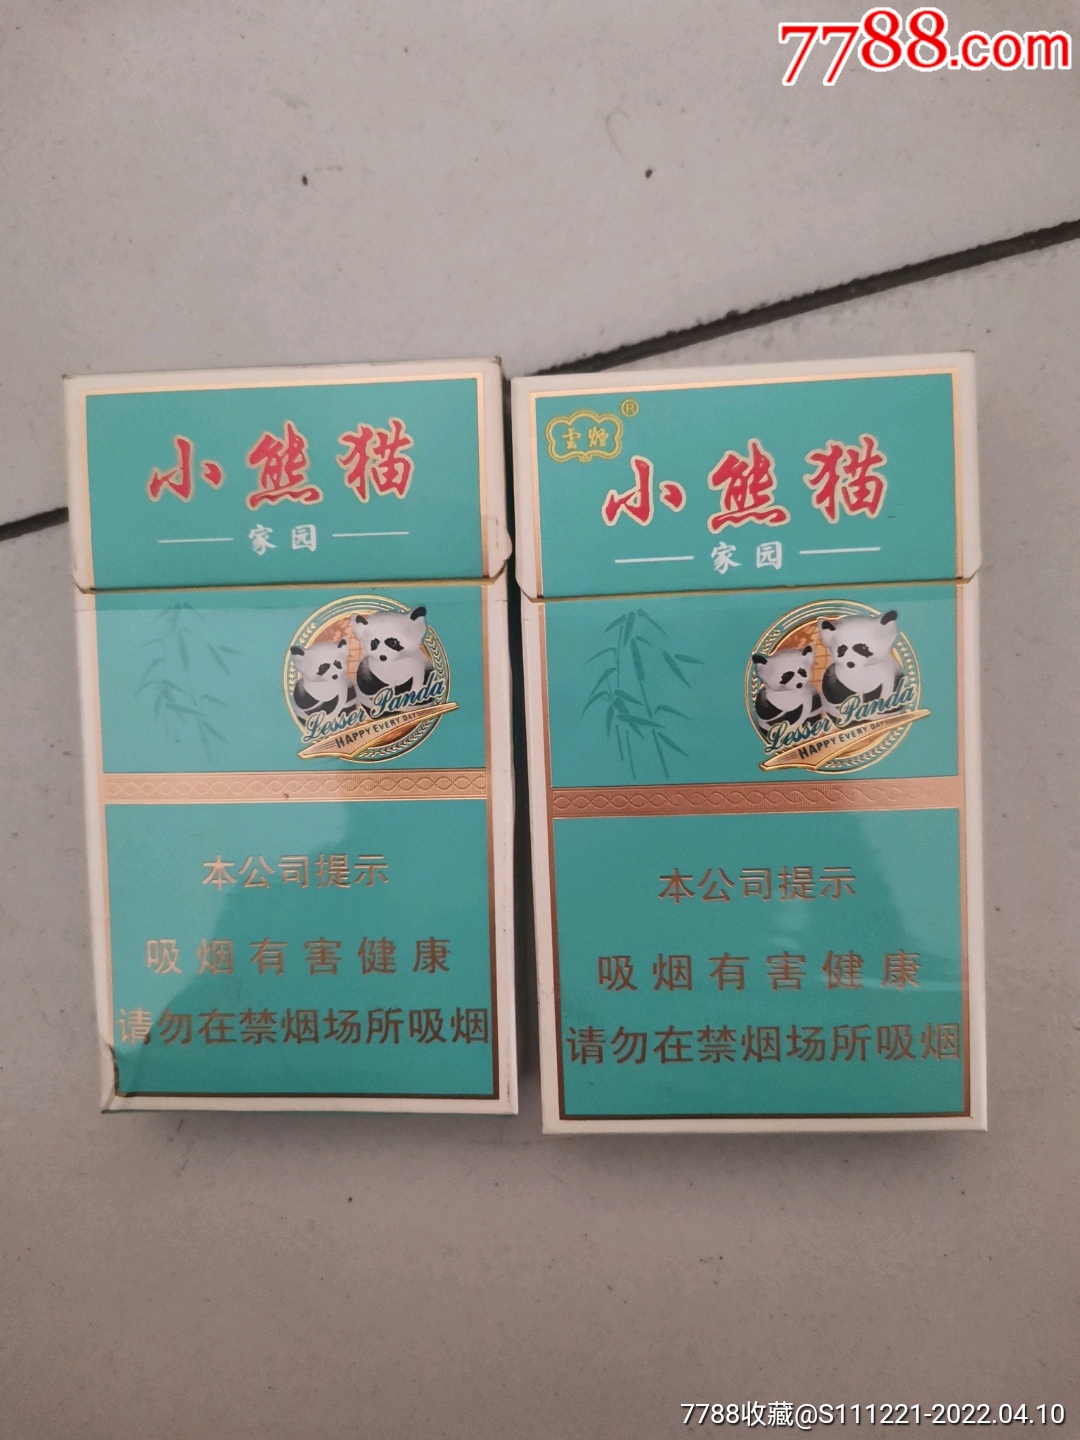 小熊猫烟草图片